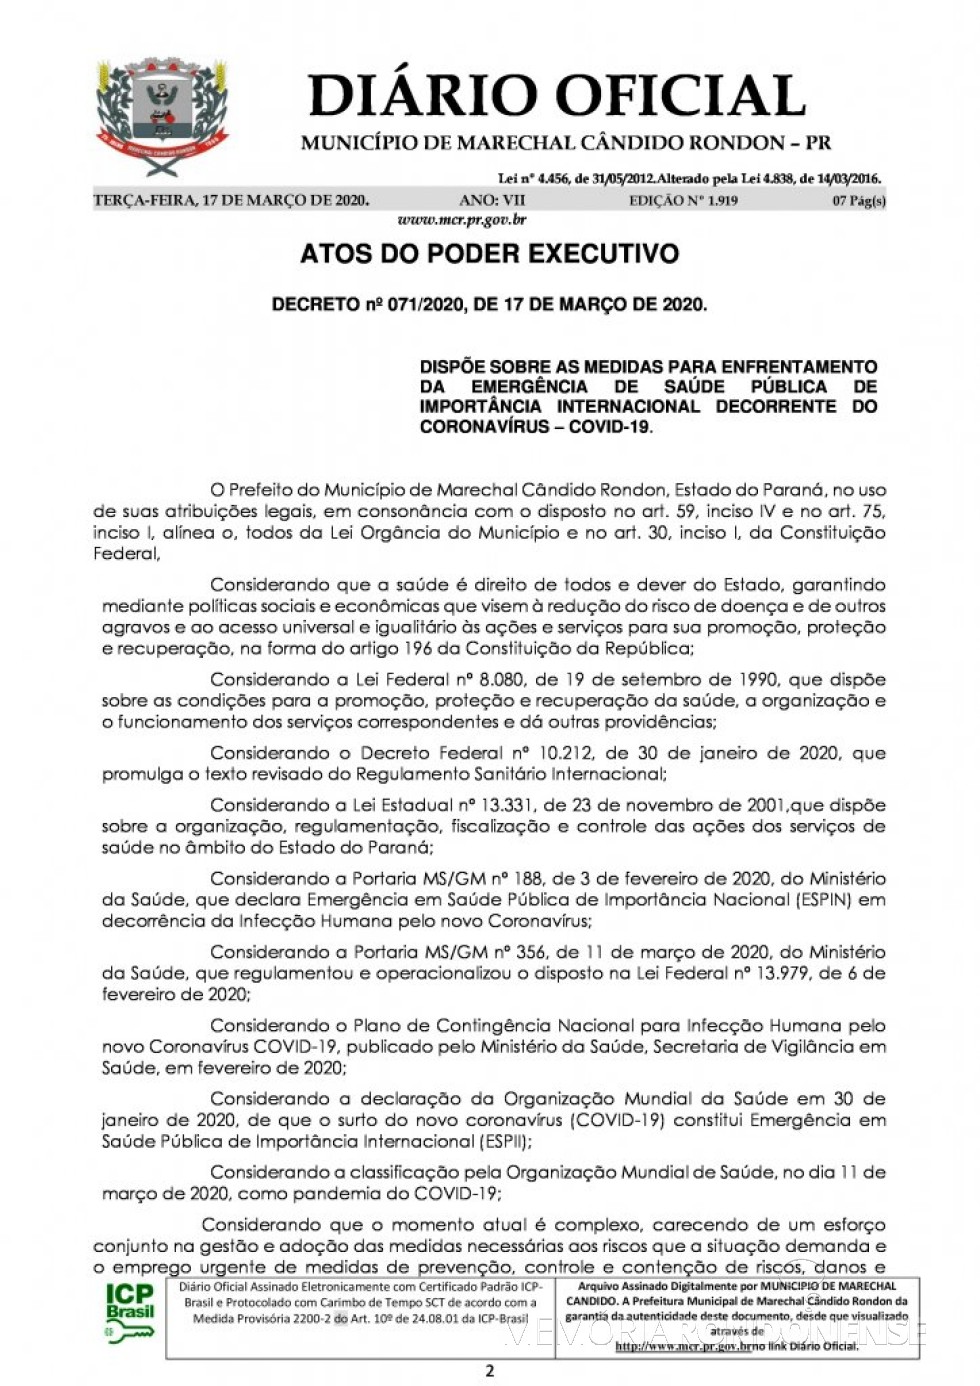 || Página inicial do Decreto nº 071/2020, assinado pelo Poder Executivo de Marechal Cândido Rondon.
Imagem: Acervo Diário Eletrônico do Município - FOTO 15 - 